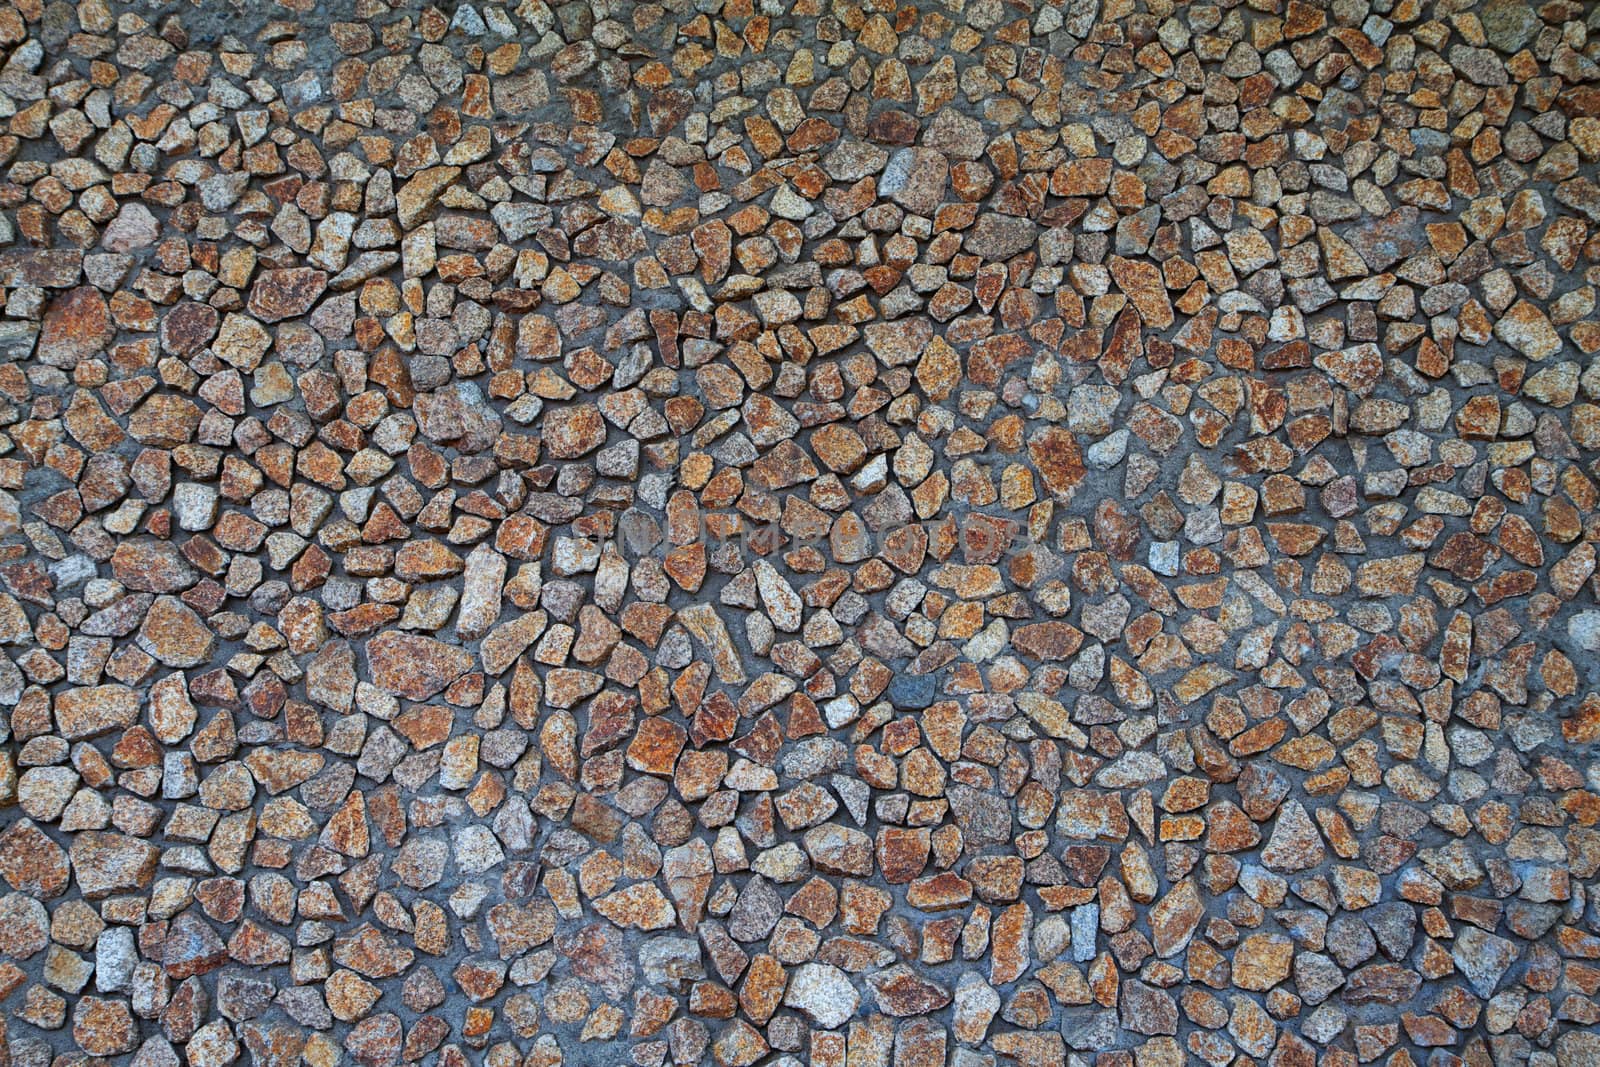 Brown, tan, and gray Rock and motar wall